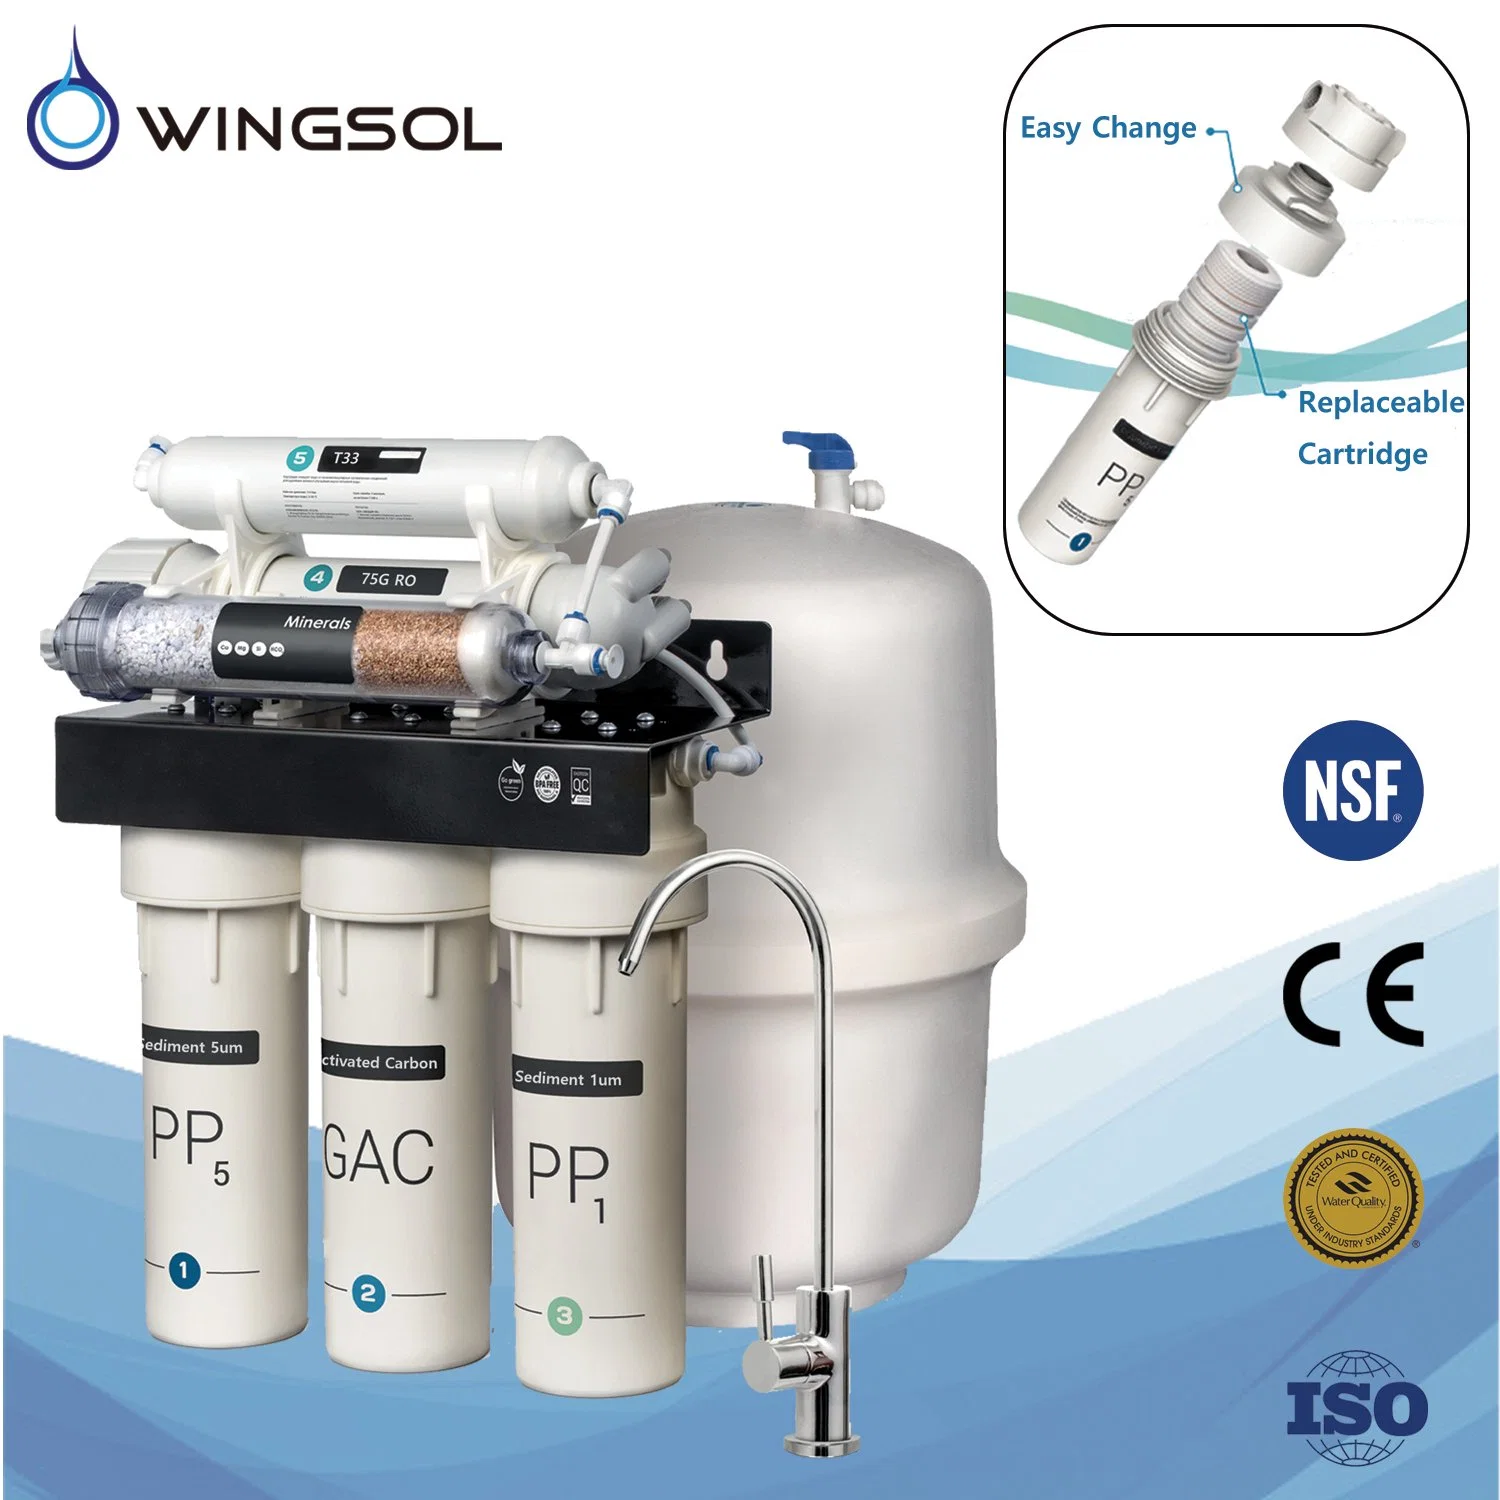 Wingsol Umkehrosmose RO System Wasserenthärter Wasserreiniger Aufbereitung Anlage Wasser Filter System Wasser Purificatio Reines Wasser